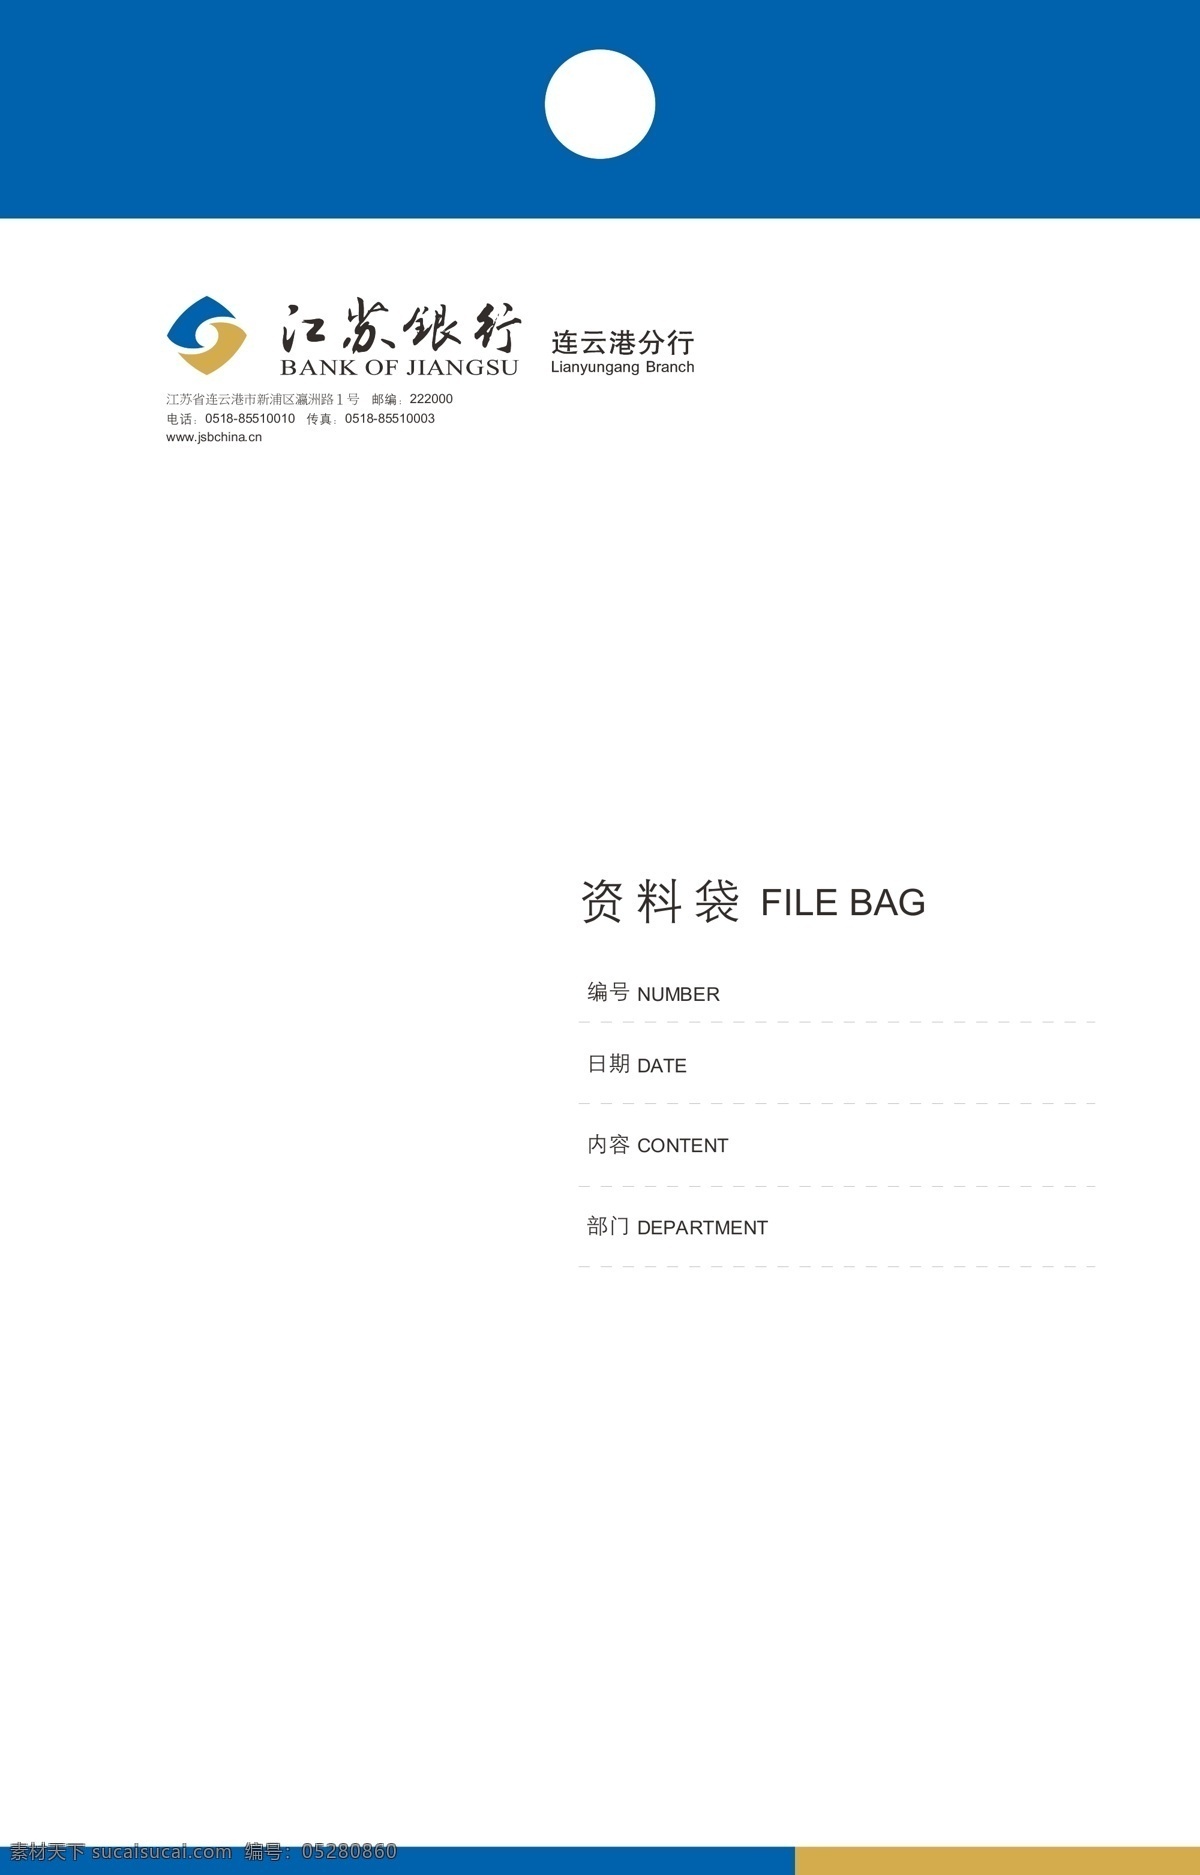 江苏 银行 信封 档案袋 江苏银行 标准vi 标准色 公共标识标志 标识标志图标 矢量